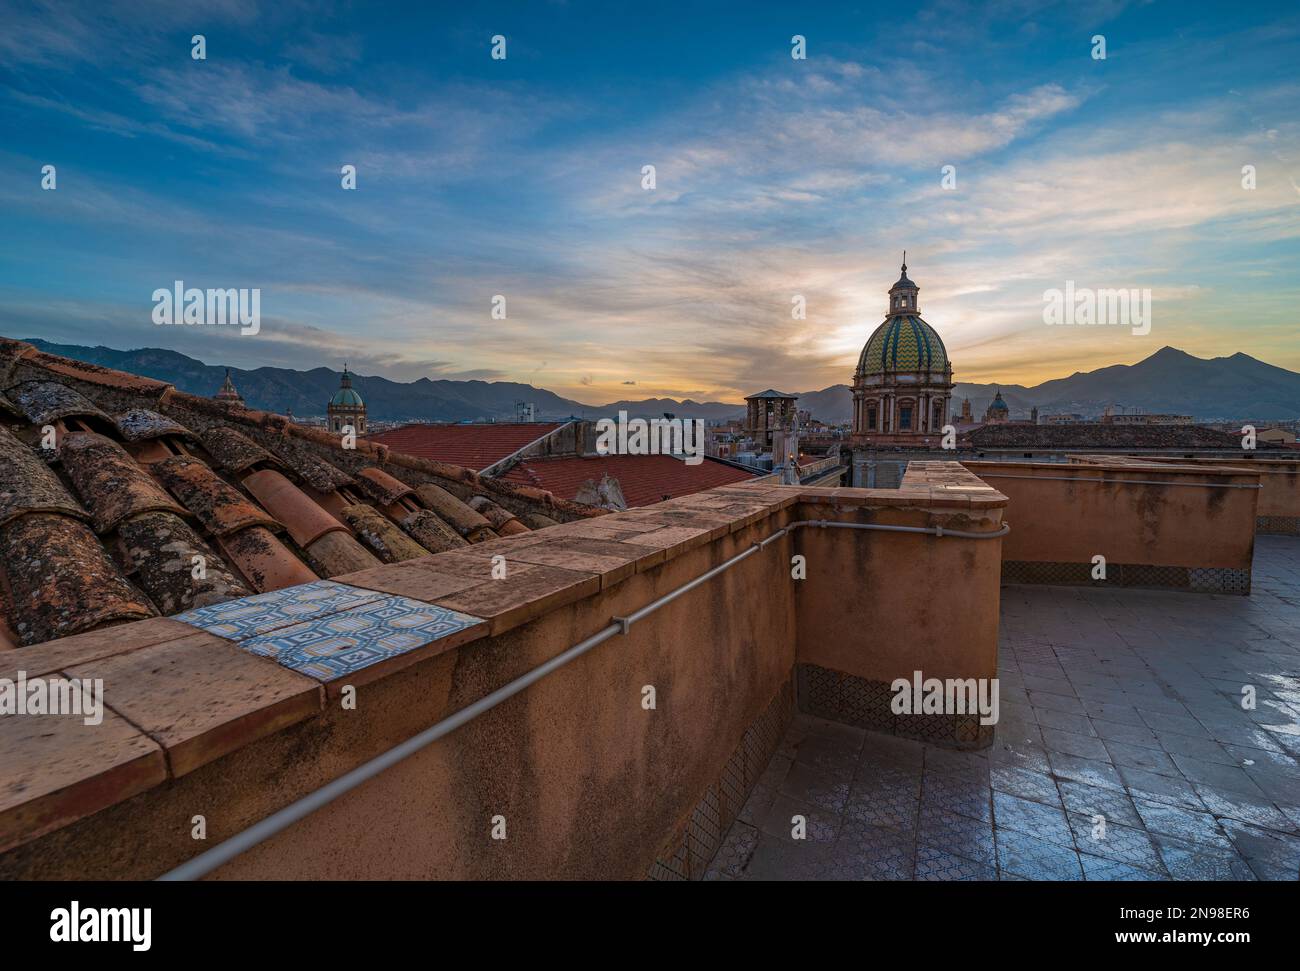 La ville de Palerme vue des toits au crépuscule, Sicile Banque D'Images